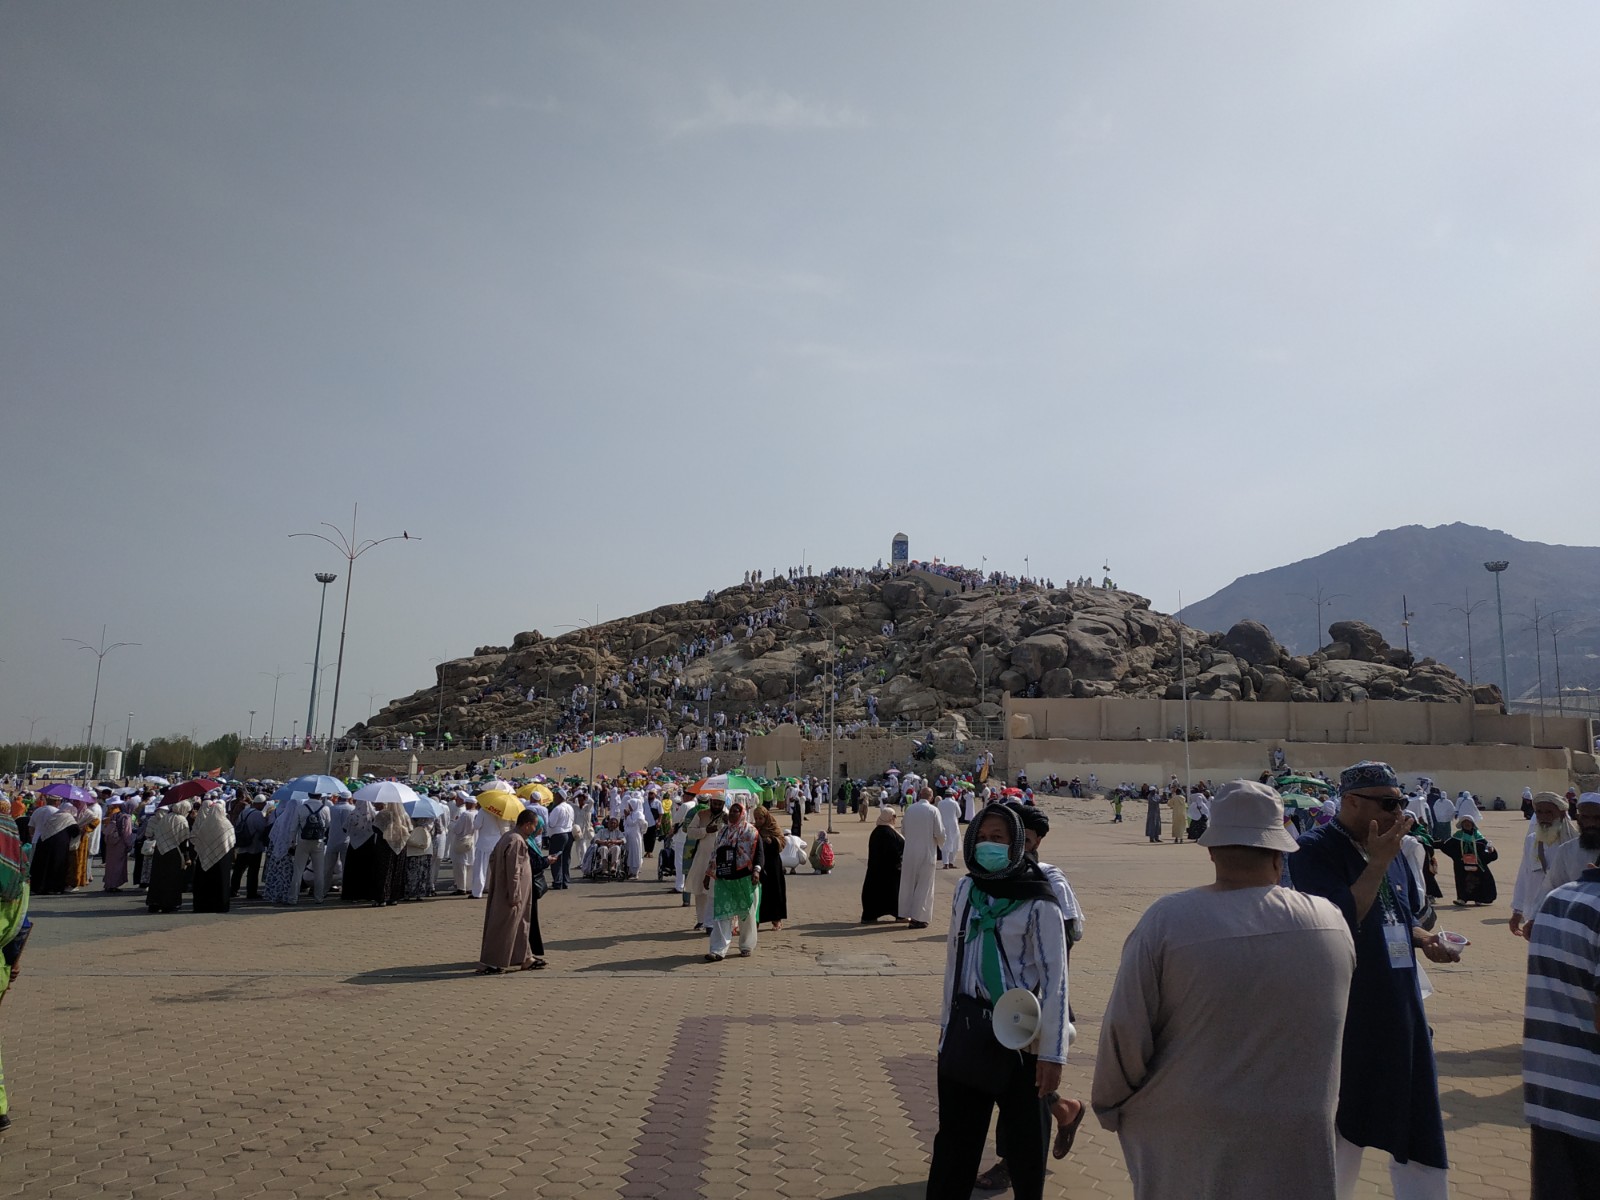 بالصور: حجاج اللد والرملة البرّ يزورون الاماكن المقدسّة في مكة المكرمة